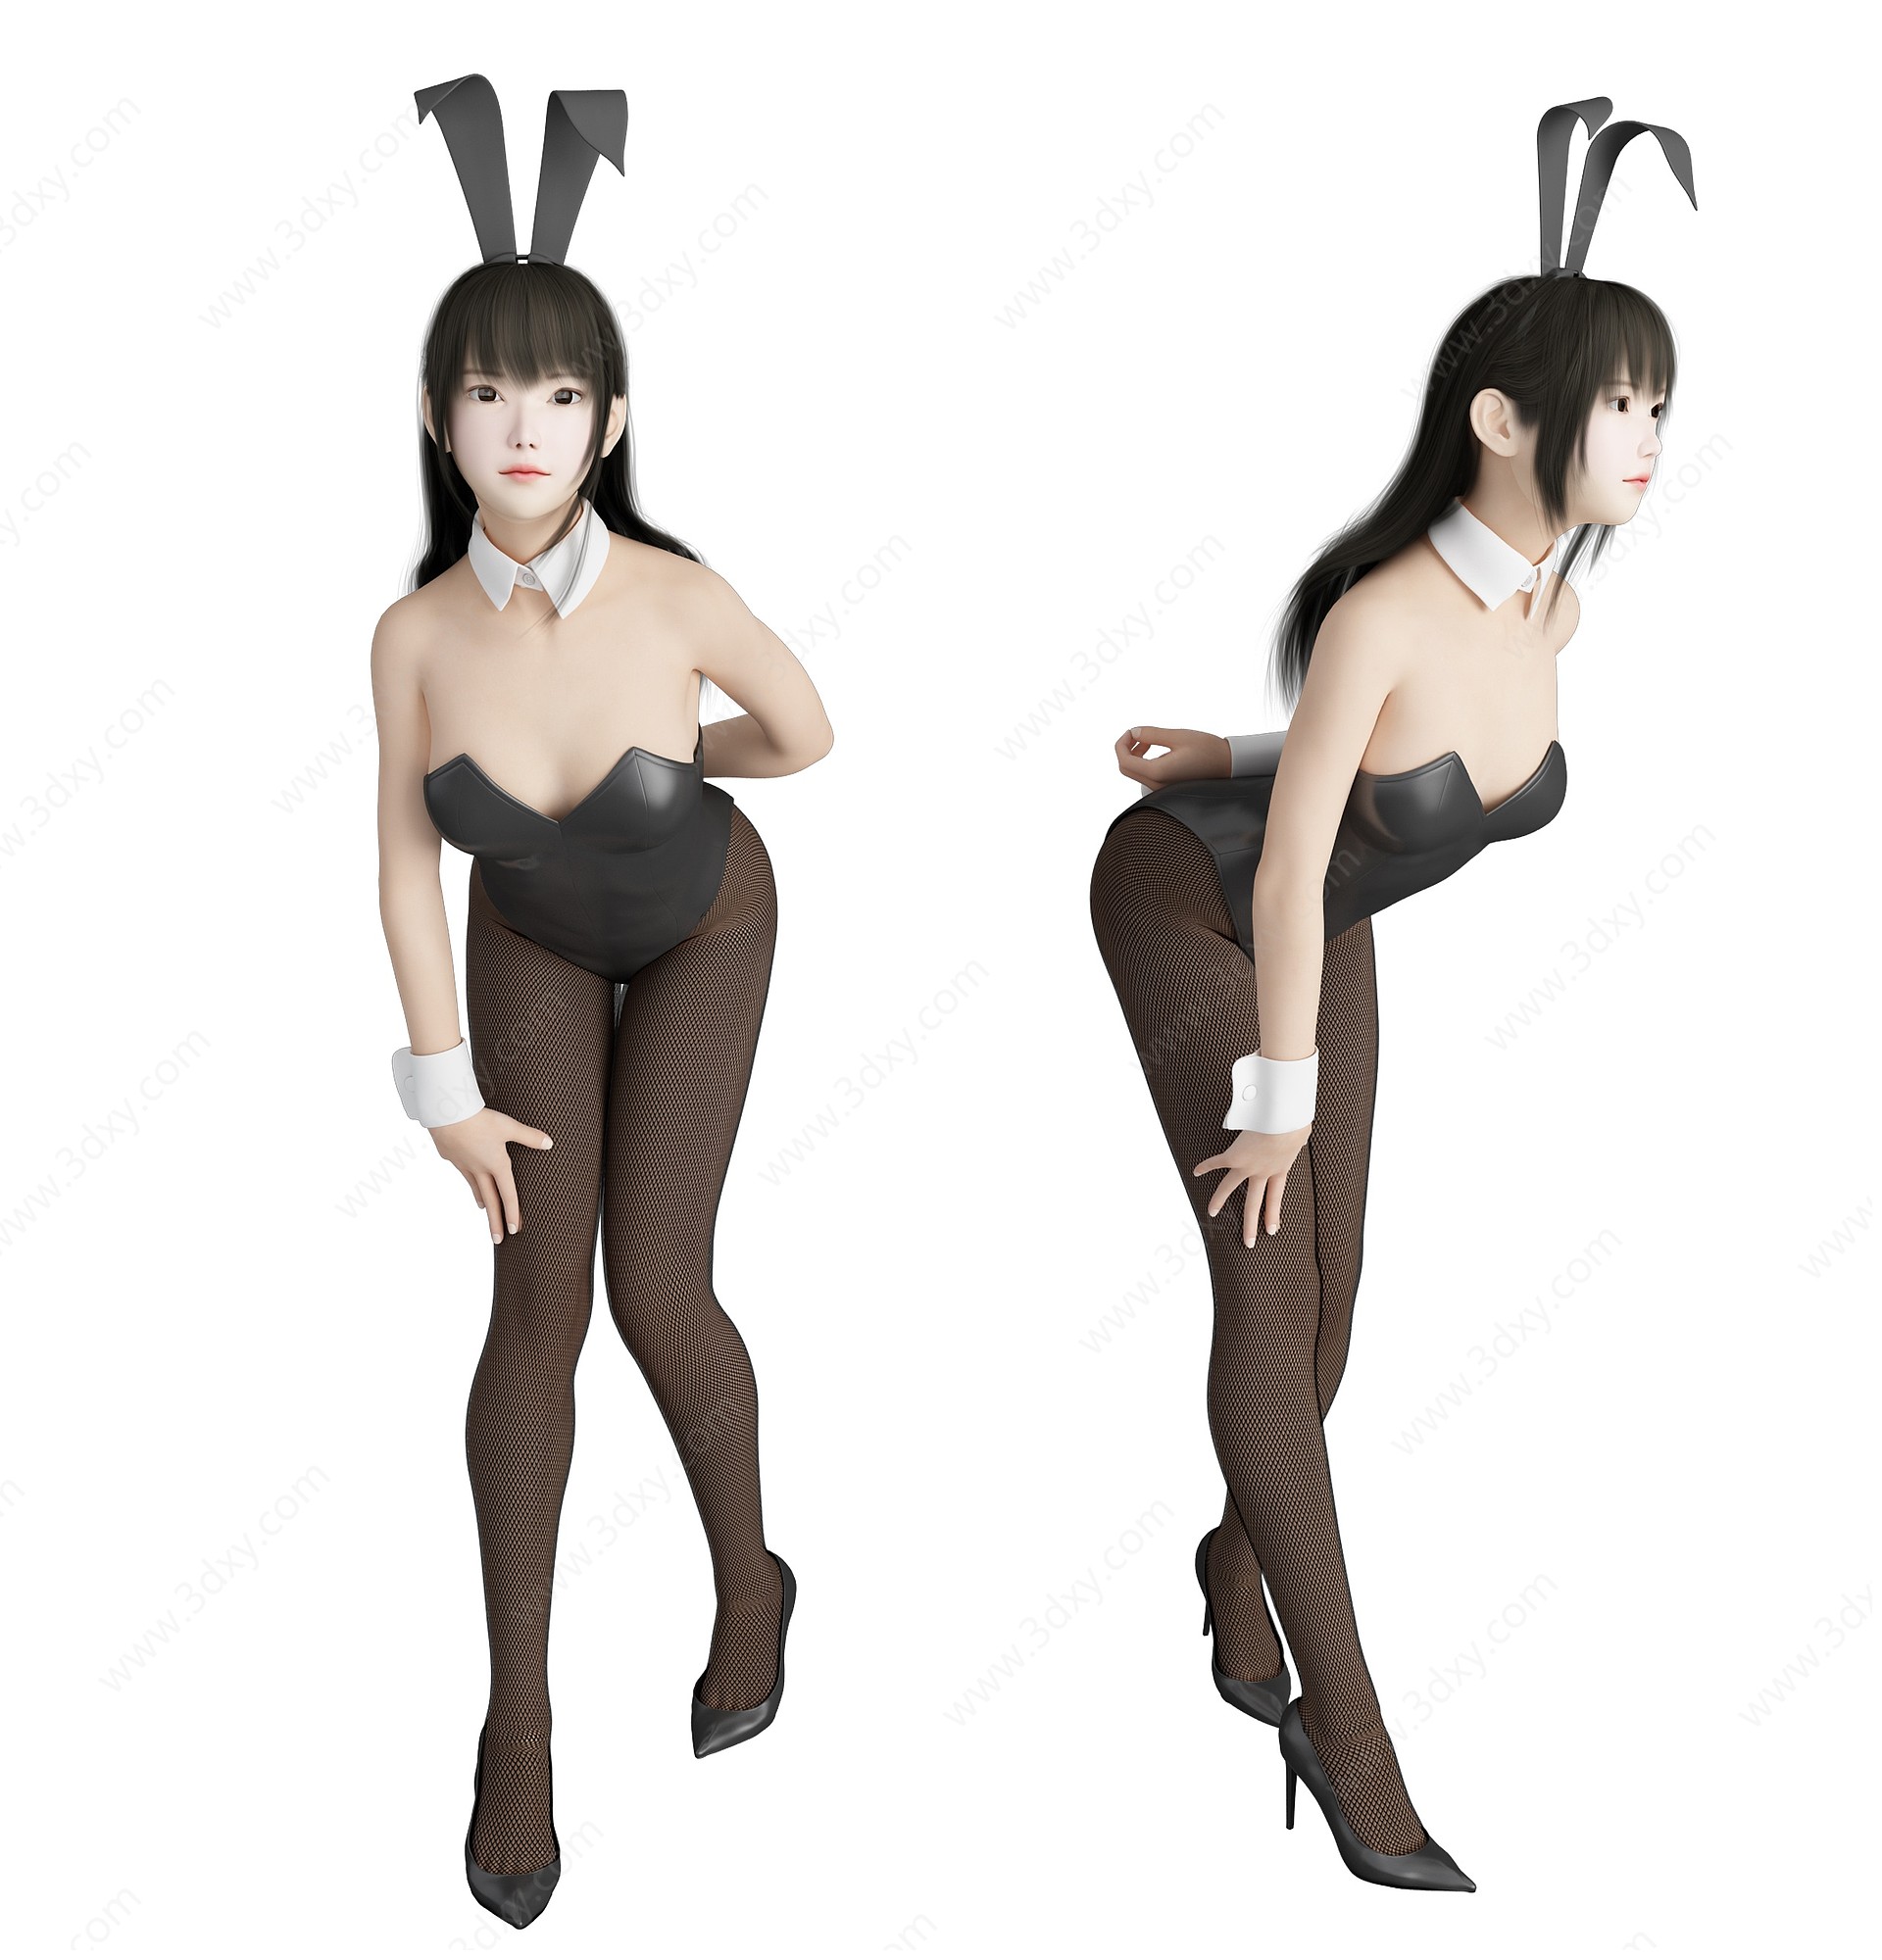 现代风格兔女郎美女人物3D模型